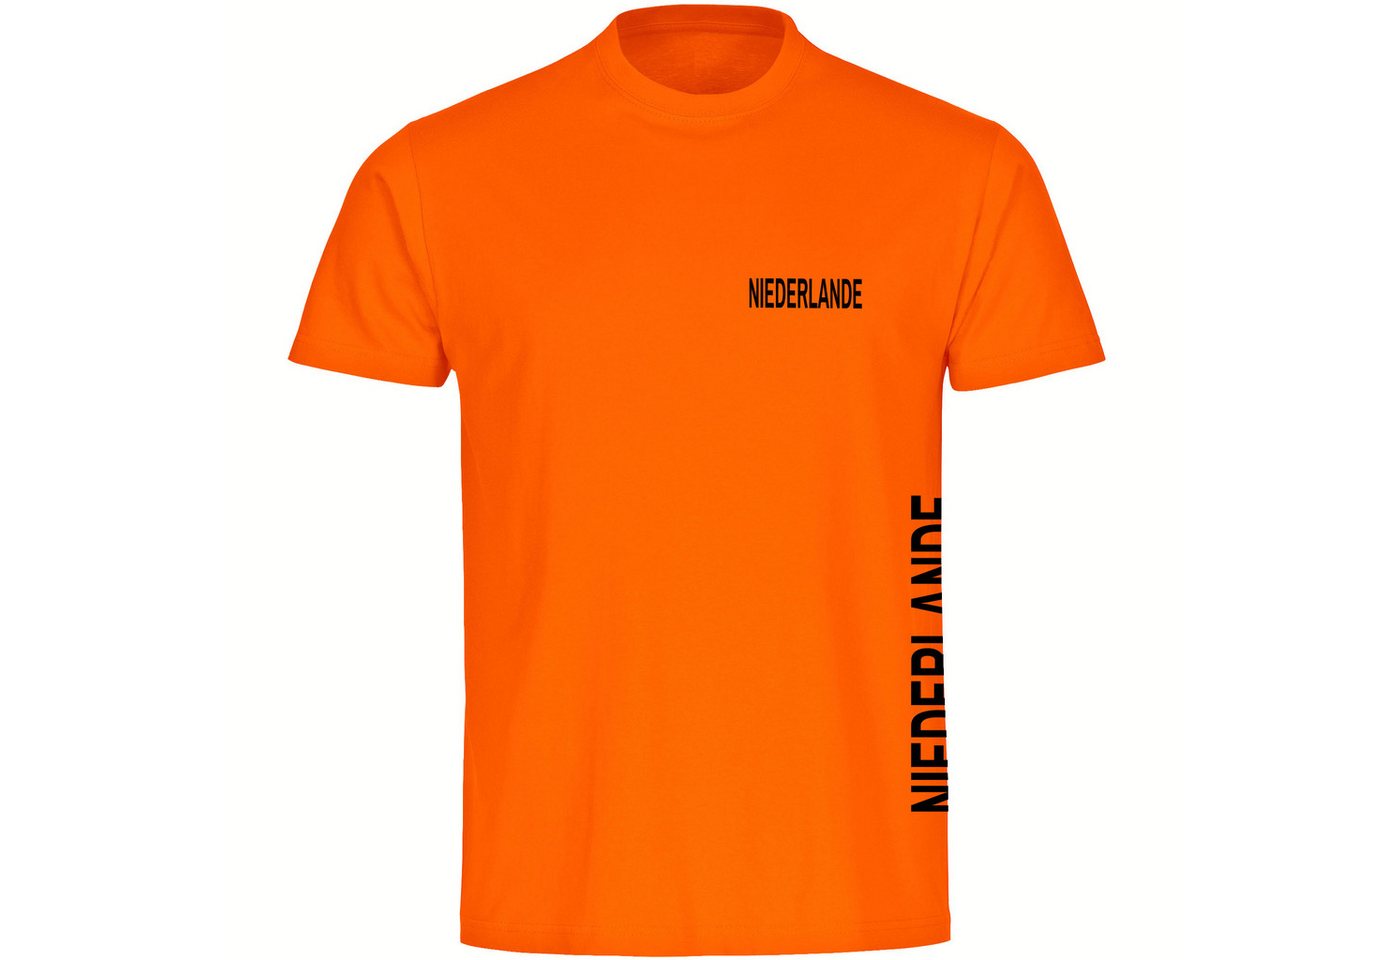 multifanshop T-Shirt Herren Niederlande - Brust & Seite - Männer von multifanshop